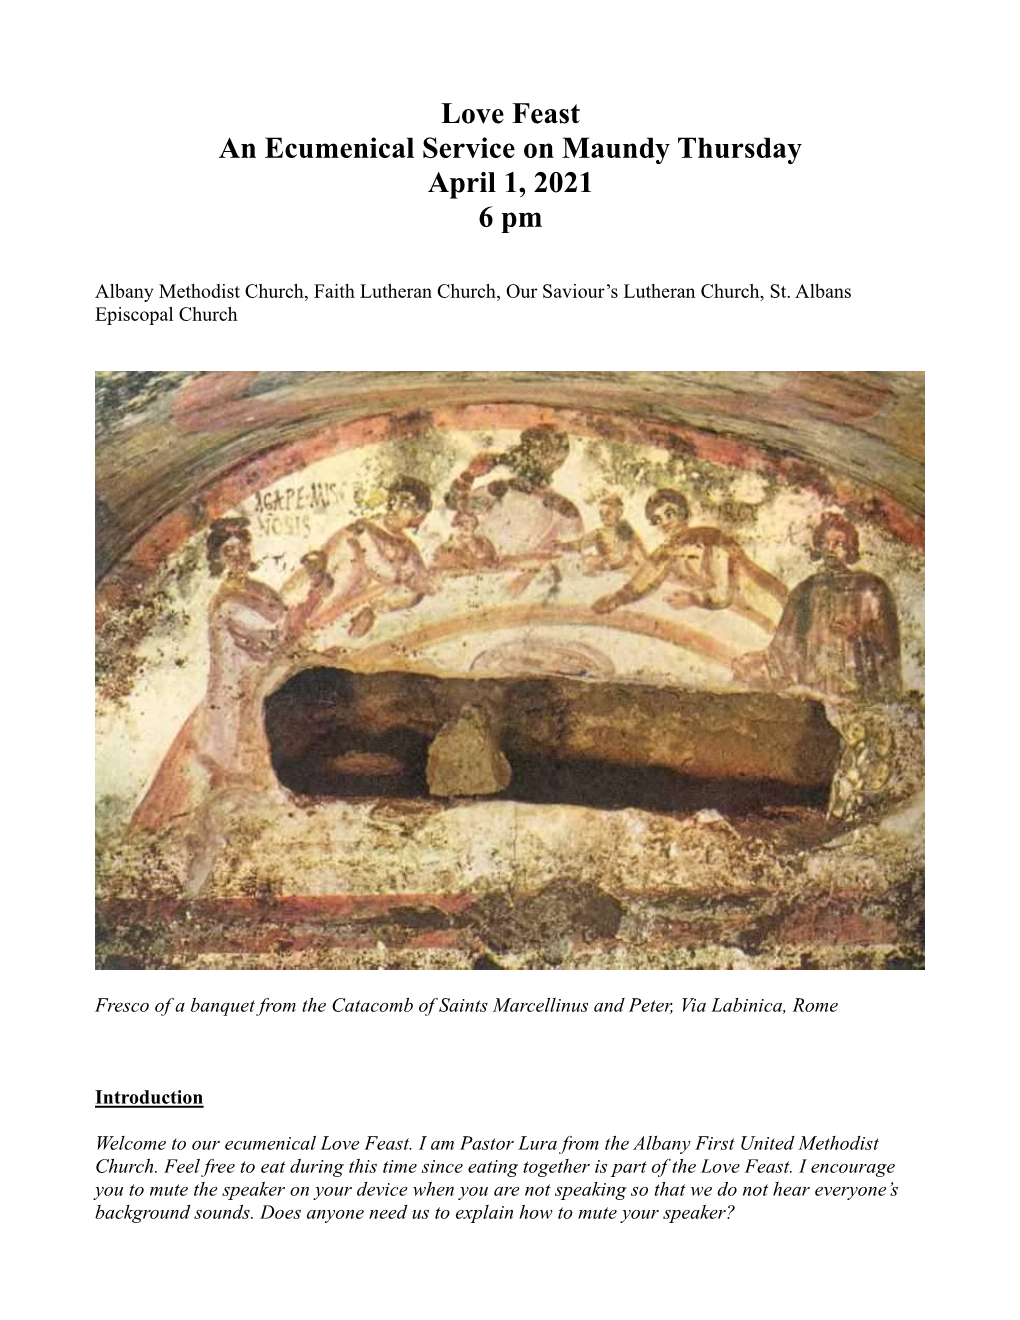 Love Feast an Ecumenical Service on Maundy Thursday April 1, 2021 6 Pm